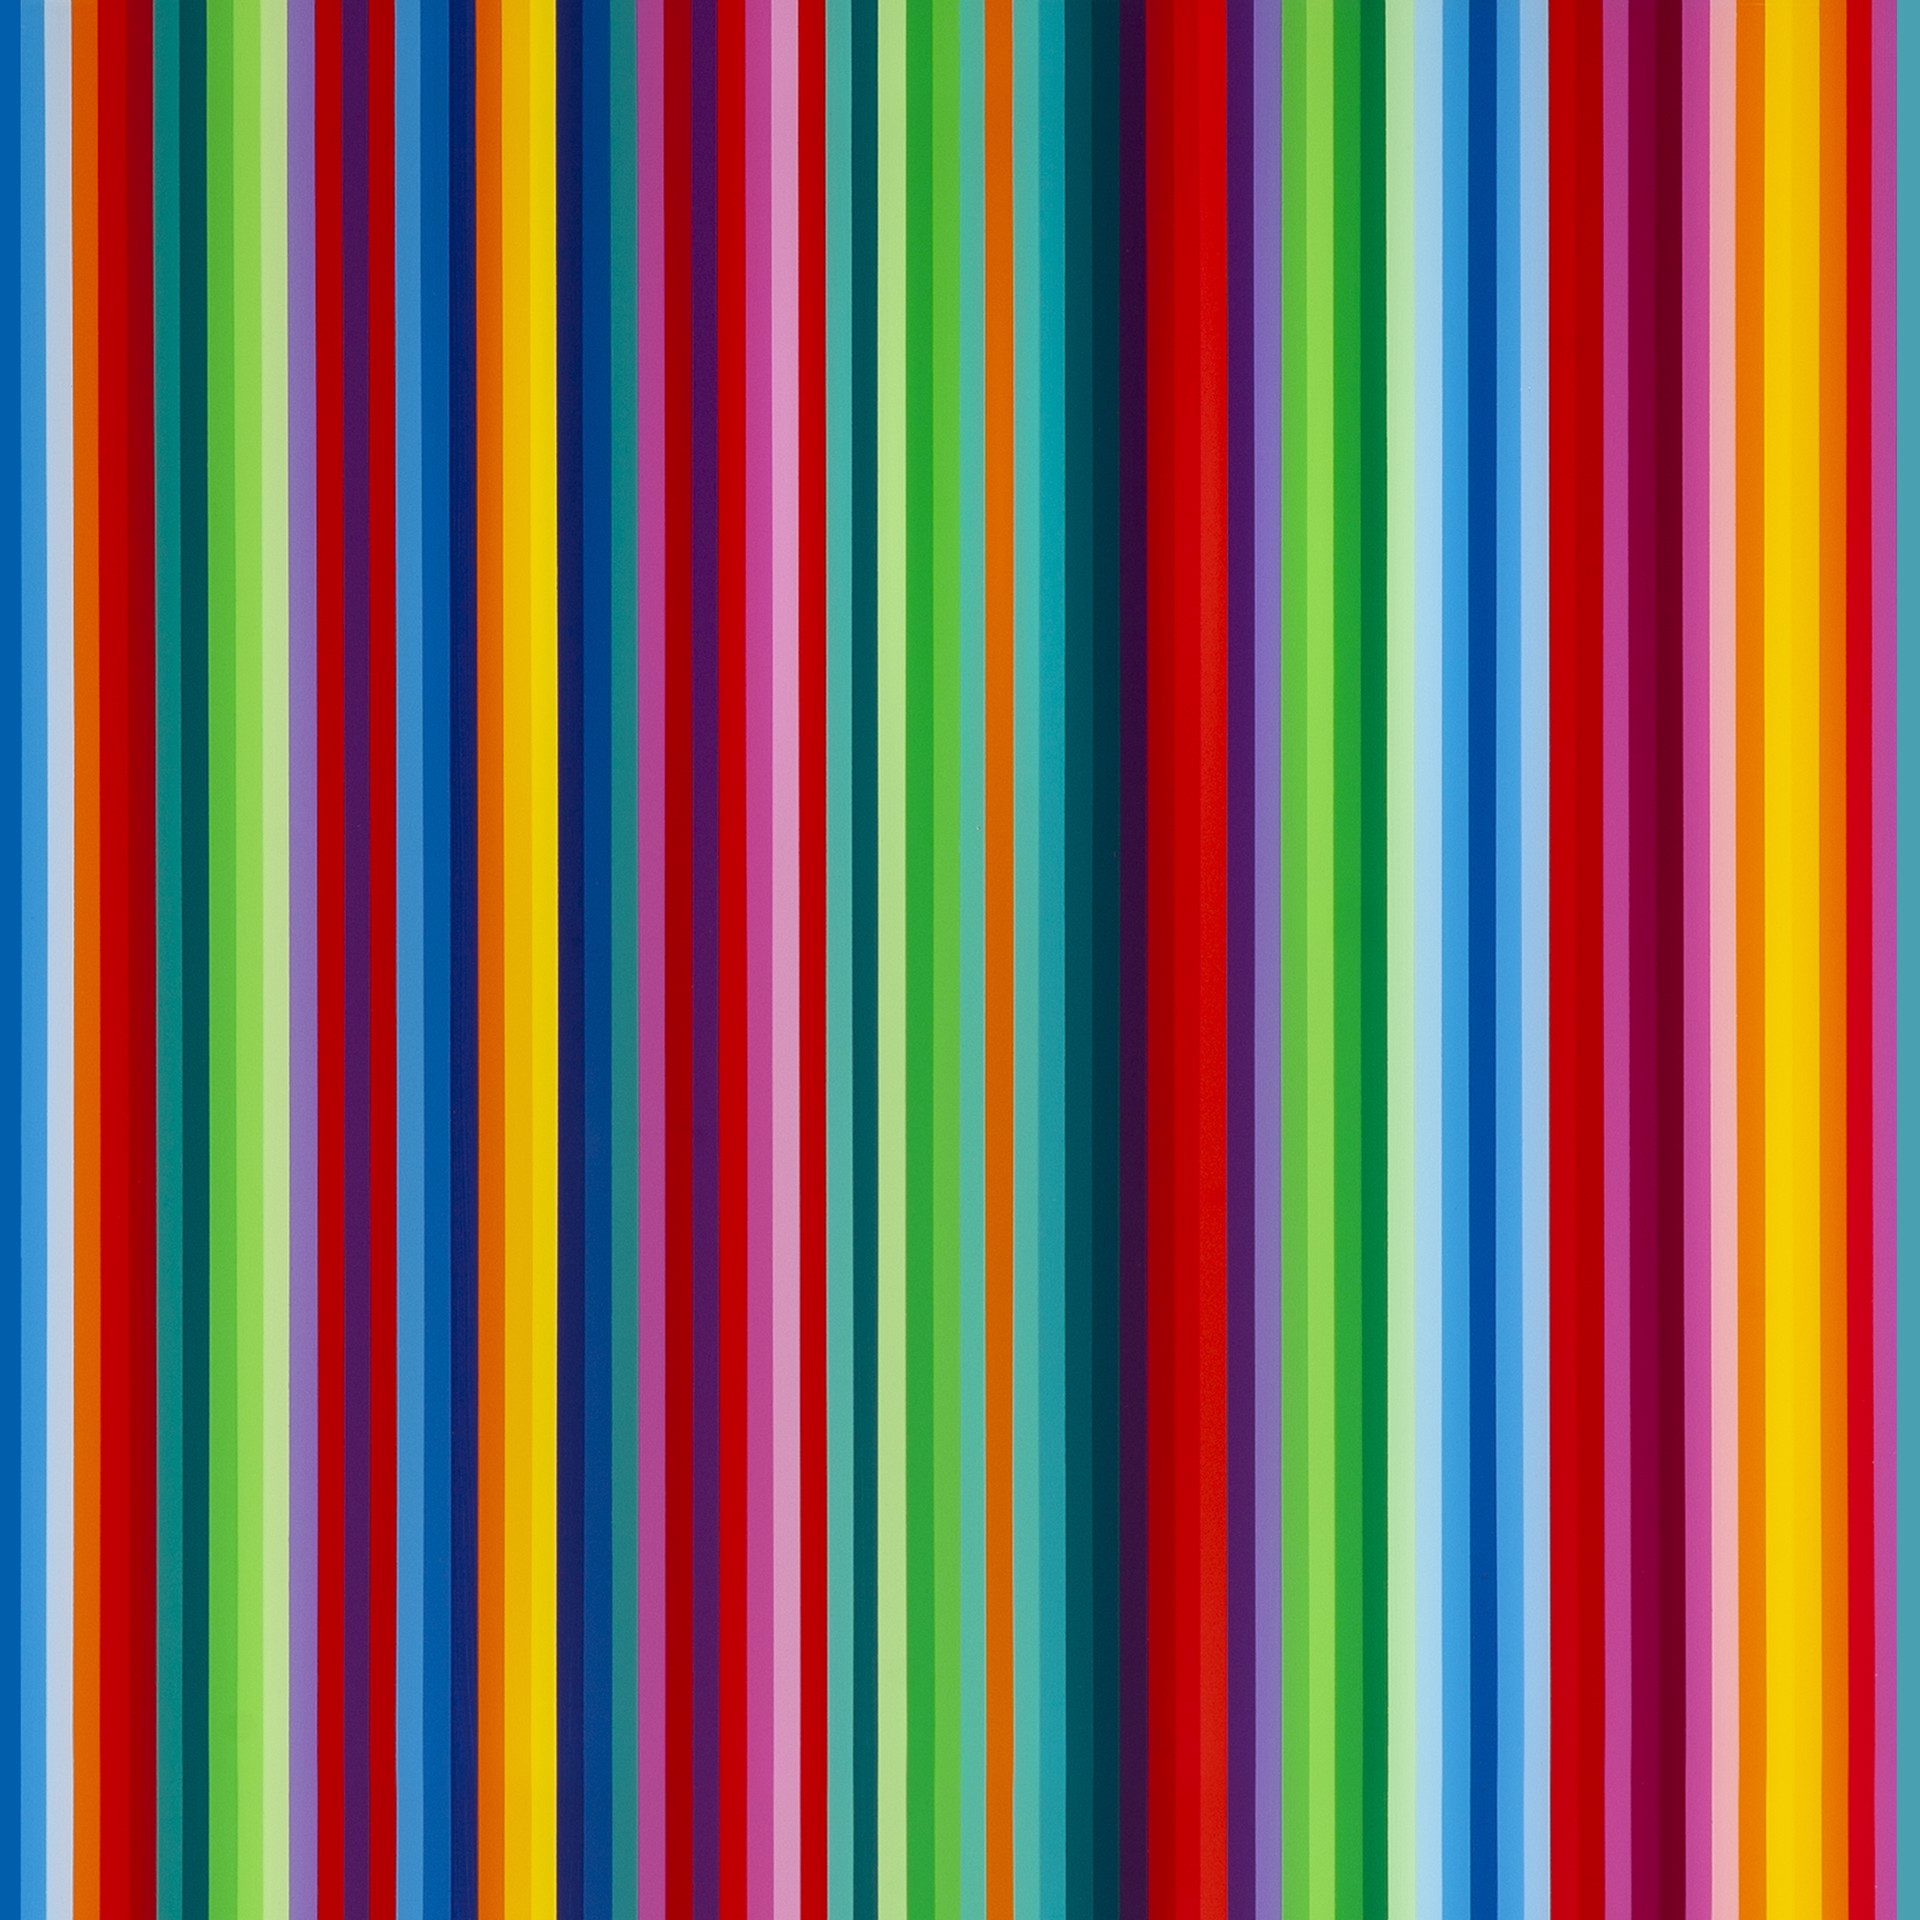 Untitled Multi-Color 18 by Jarrad Tacon-Heaslip